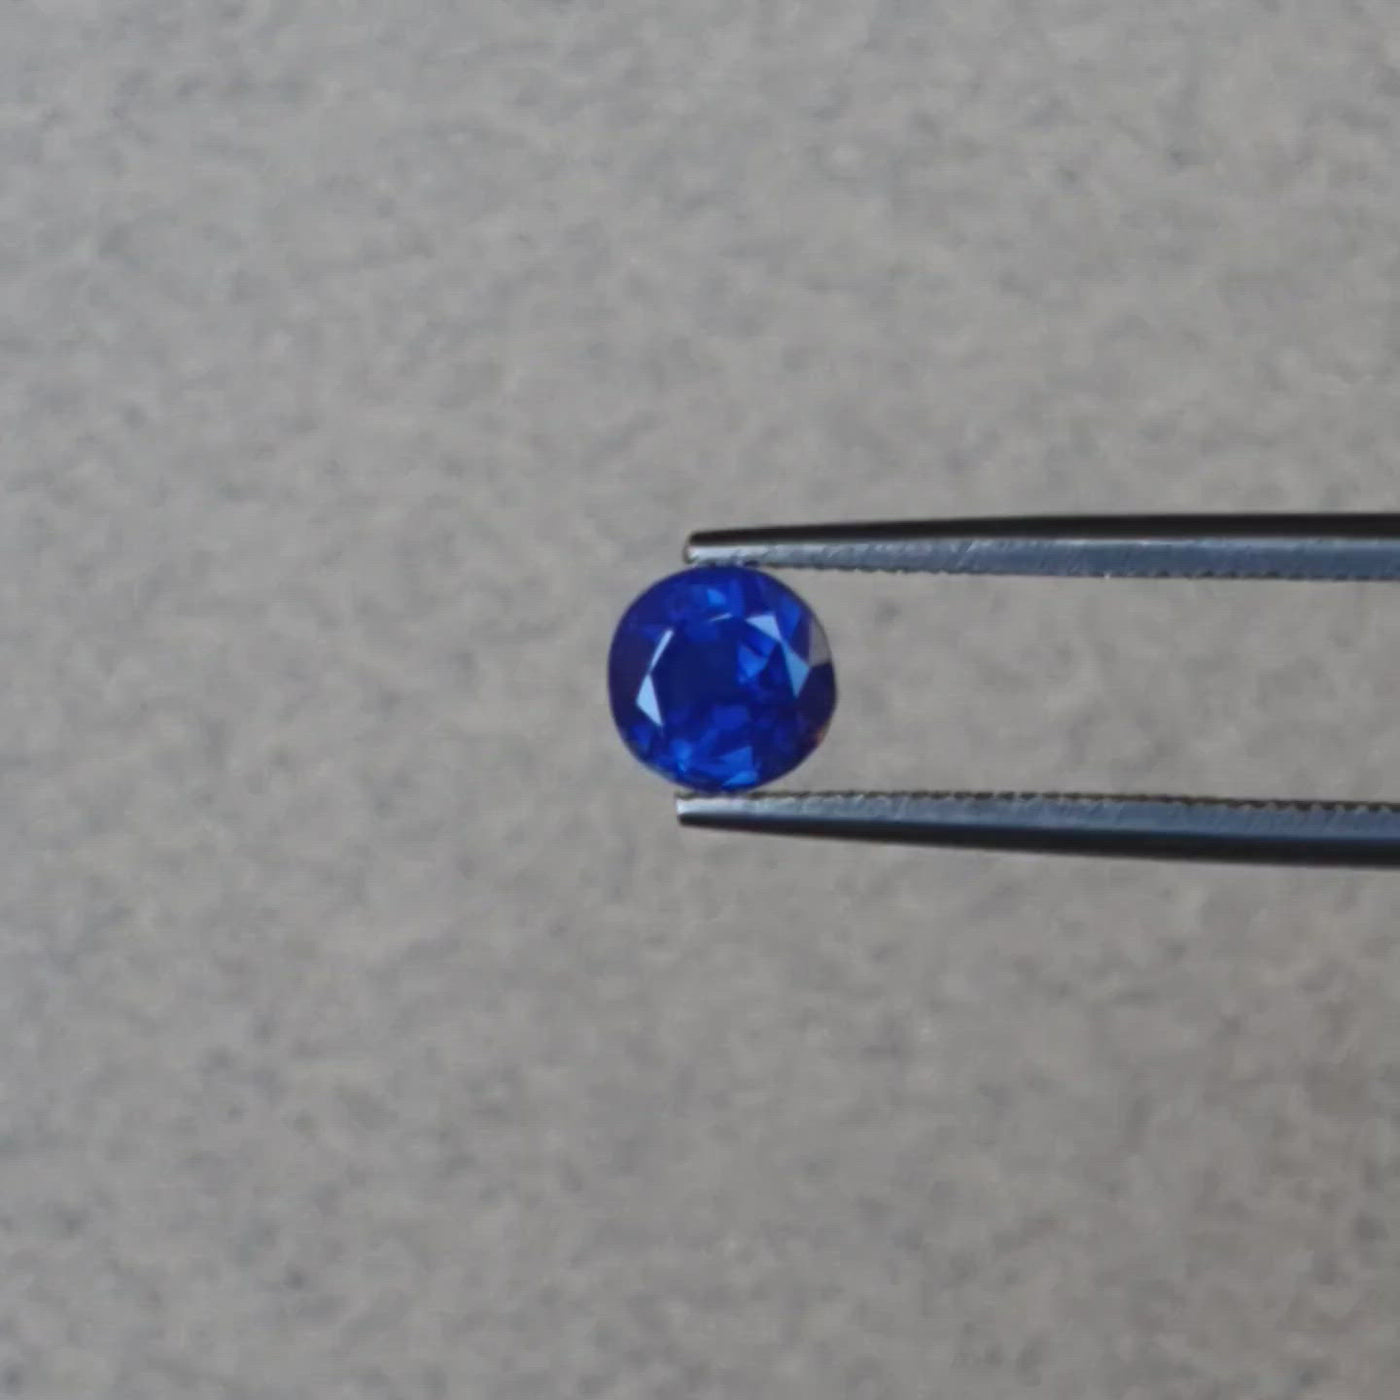 0.95ct Ceylon Sapphire, Blue - Round